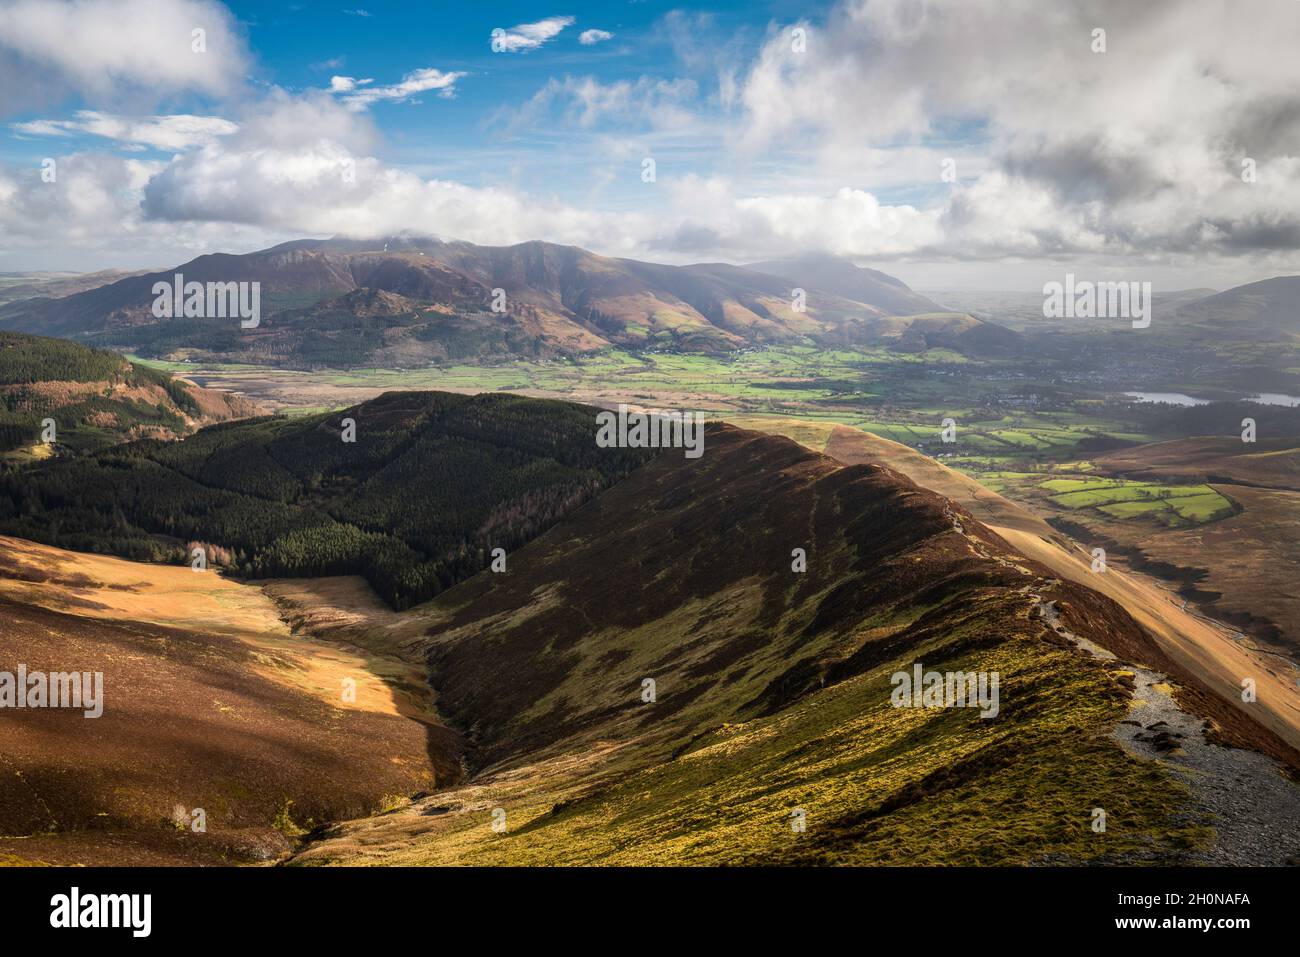 Vistas del macizo de Skiddaw y las colinas circundantes desde Grisedale Pike, parte de Coledale Horseshoe en el noroeste del Distrito de los Lagos, Cumbria, Inglaterra. Foto de stock